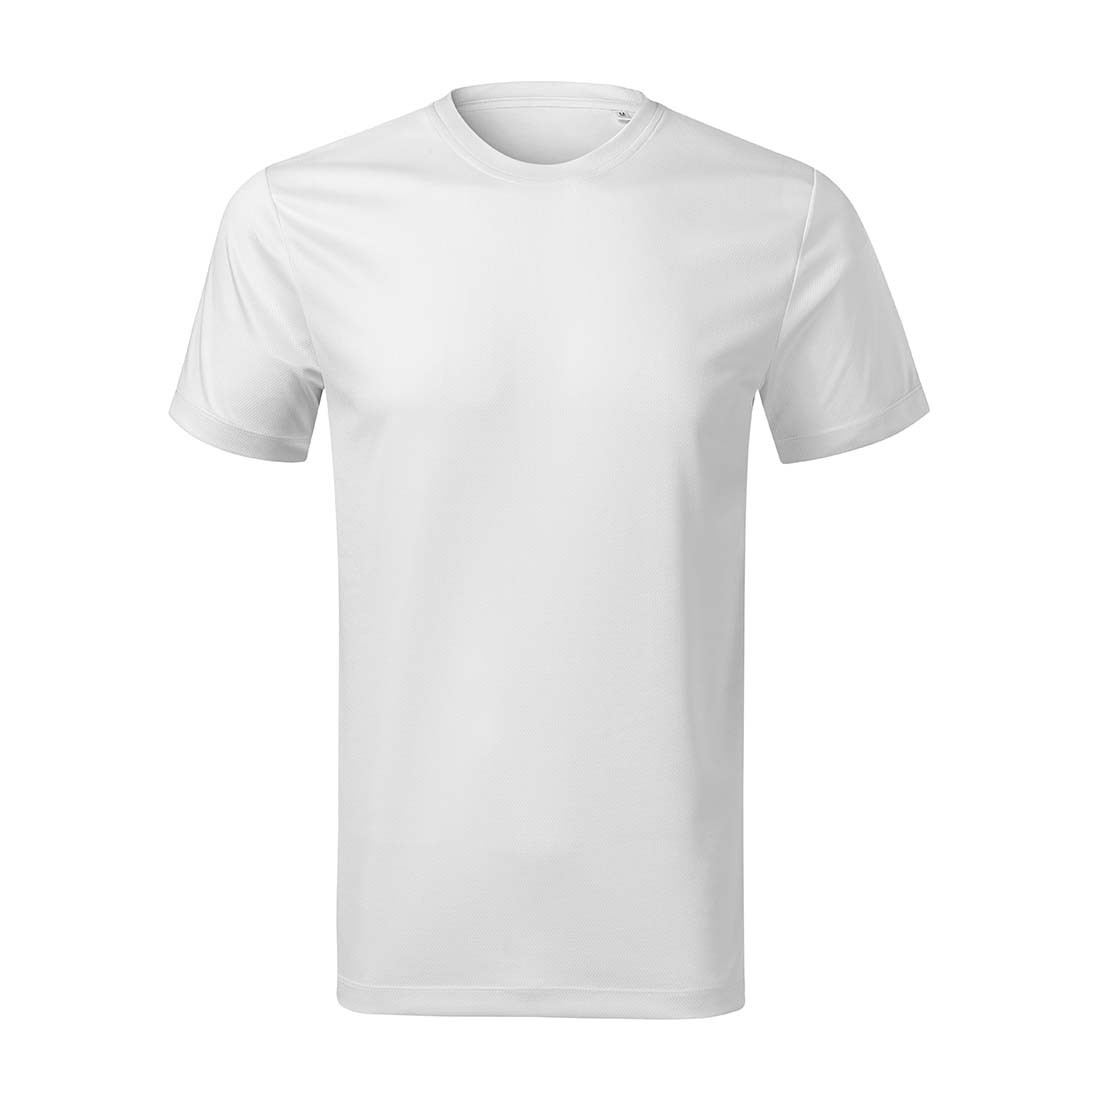 Camiseta para hombre - Ropa de protección